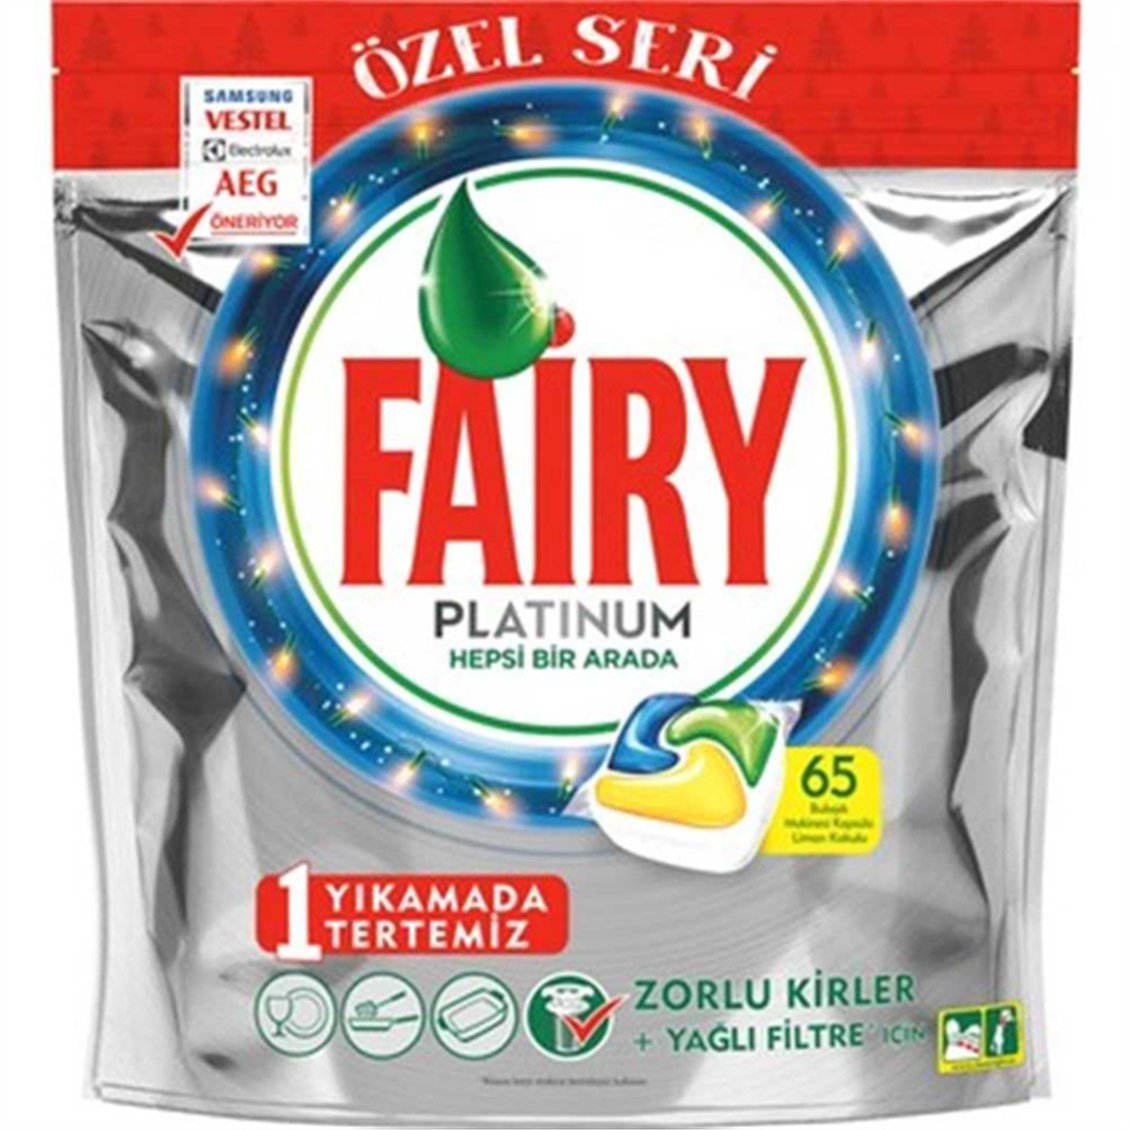 Fairy Platinum Özel Seri 65'li - Onur Market